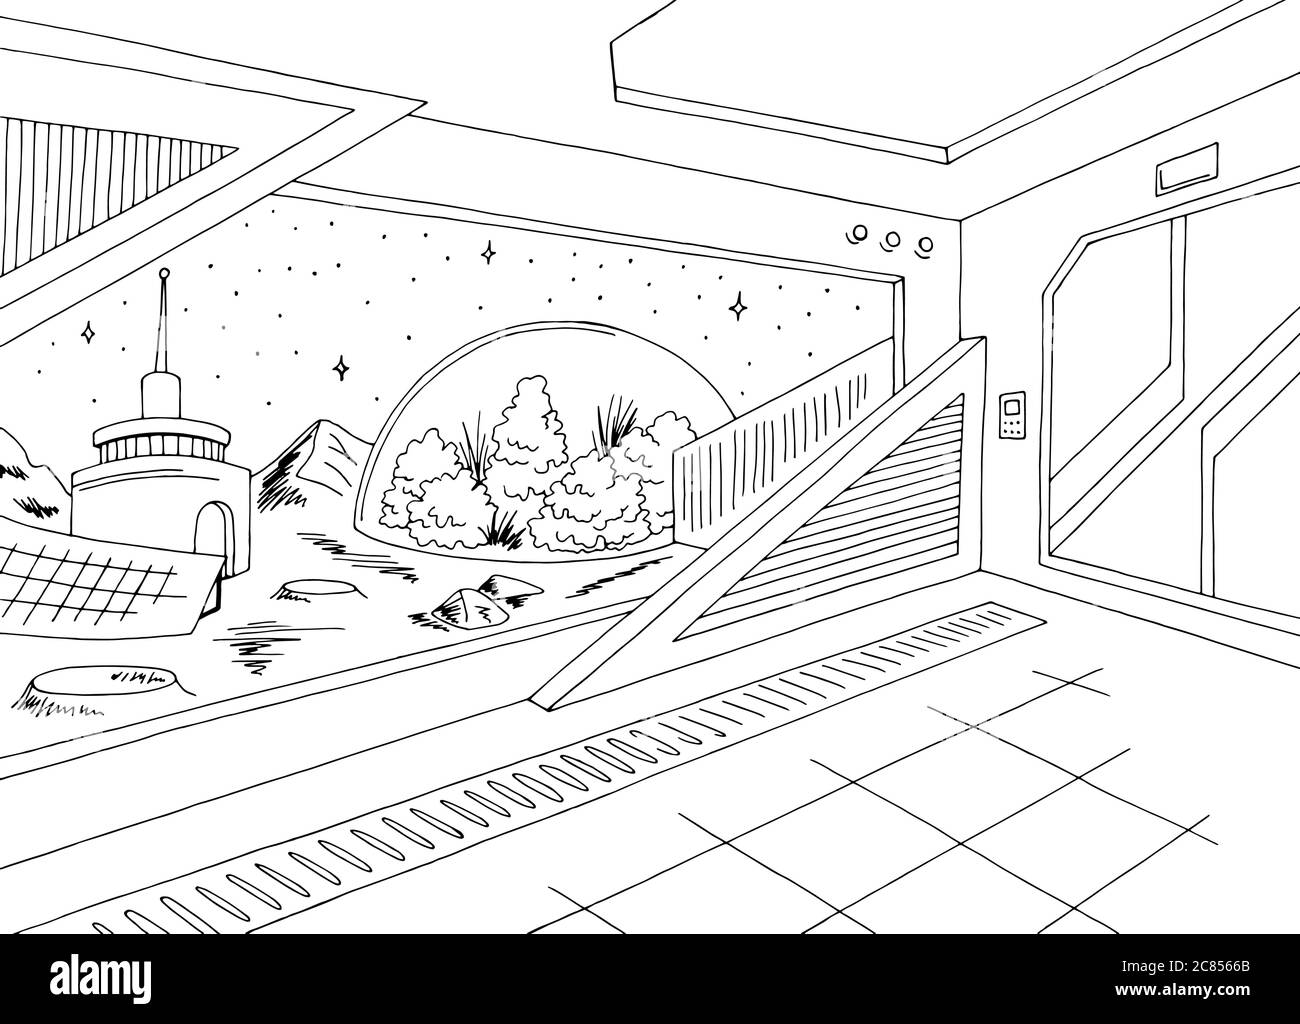 colonia de dibujos animados ilustración de stock 95465701  Shutterstock